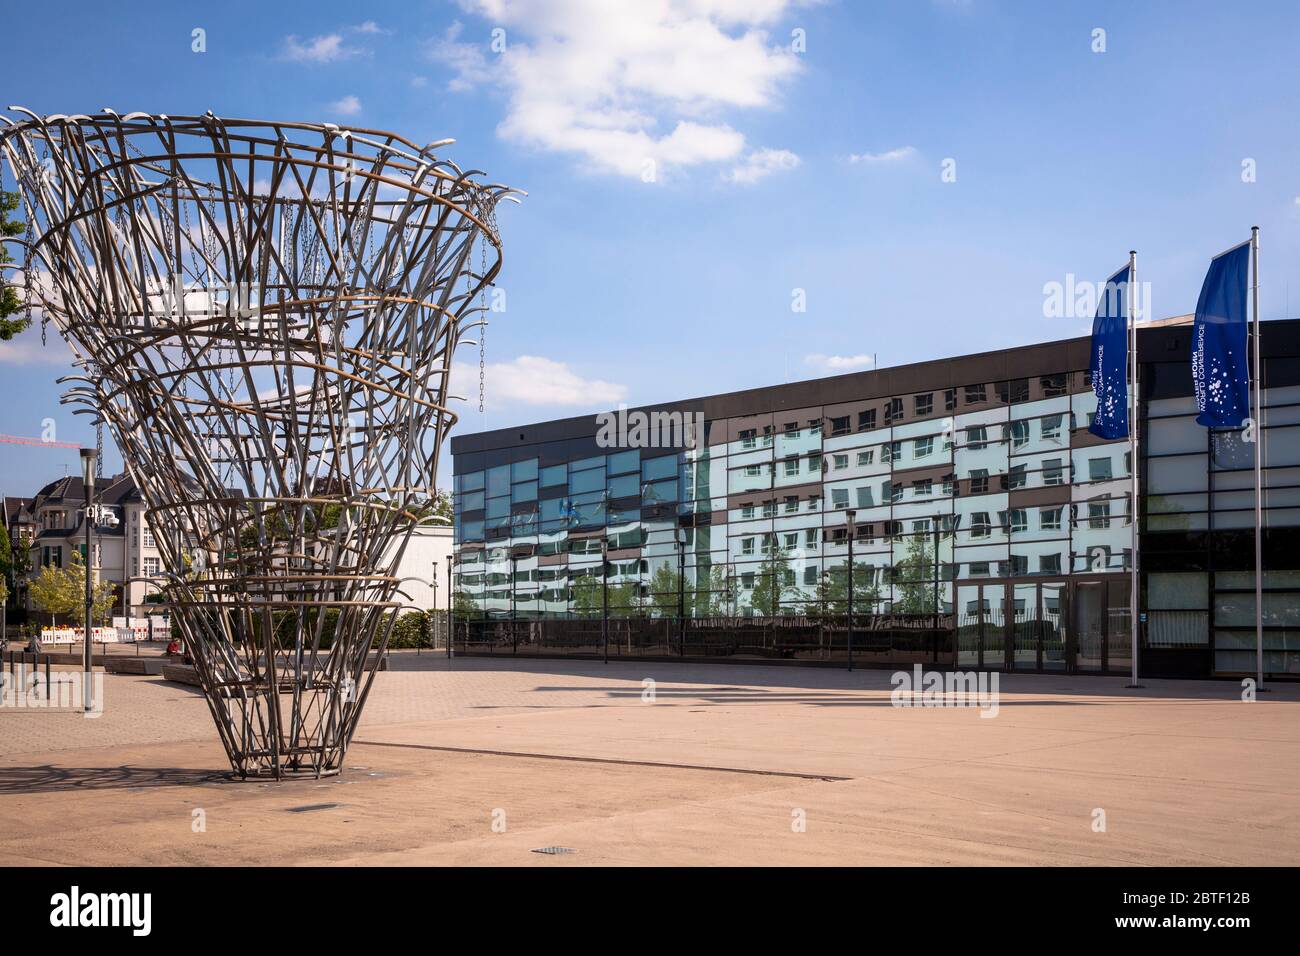 the World Conference Center, Platz der Vereinten Nationen, sculpture 'Meistdeutigkeit' by Olaf Metzel, Bonn, North Rhine-Westphalia, Germany.  das Wor Stock Photo